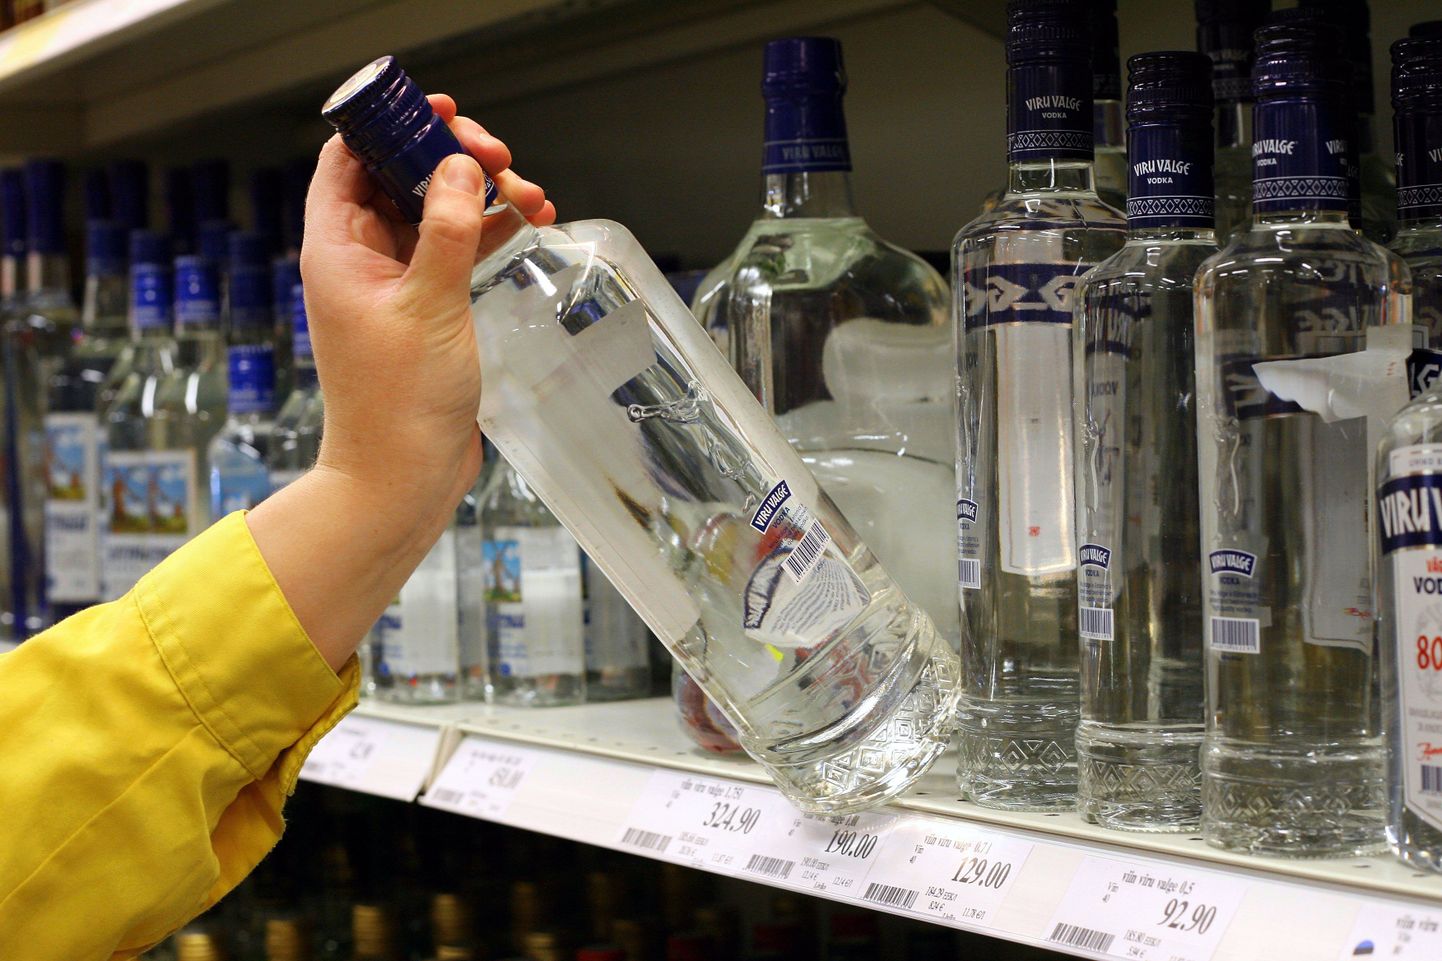 Kaupmeeste arvates ostavad inimesed alkoholi siis, kui seda tarvis läheb, ega hakka suuri varusid soetama.